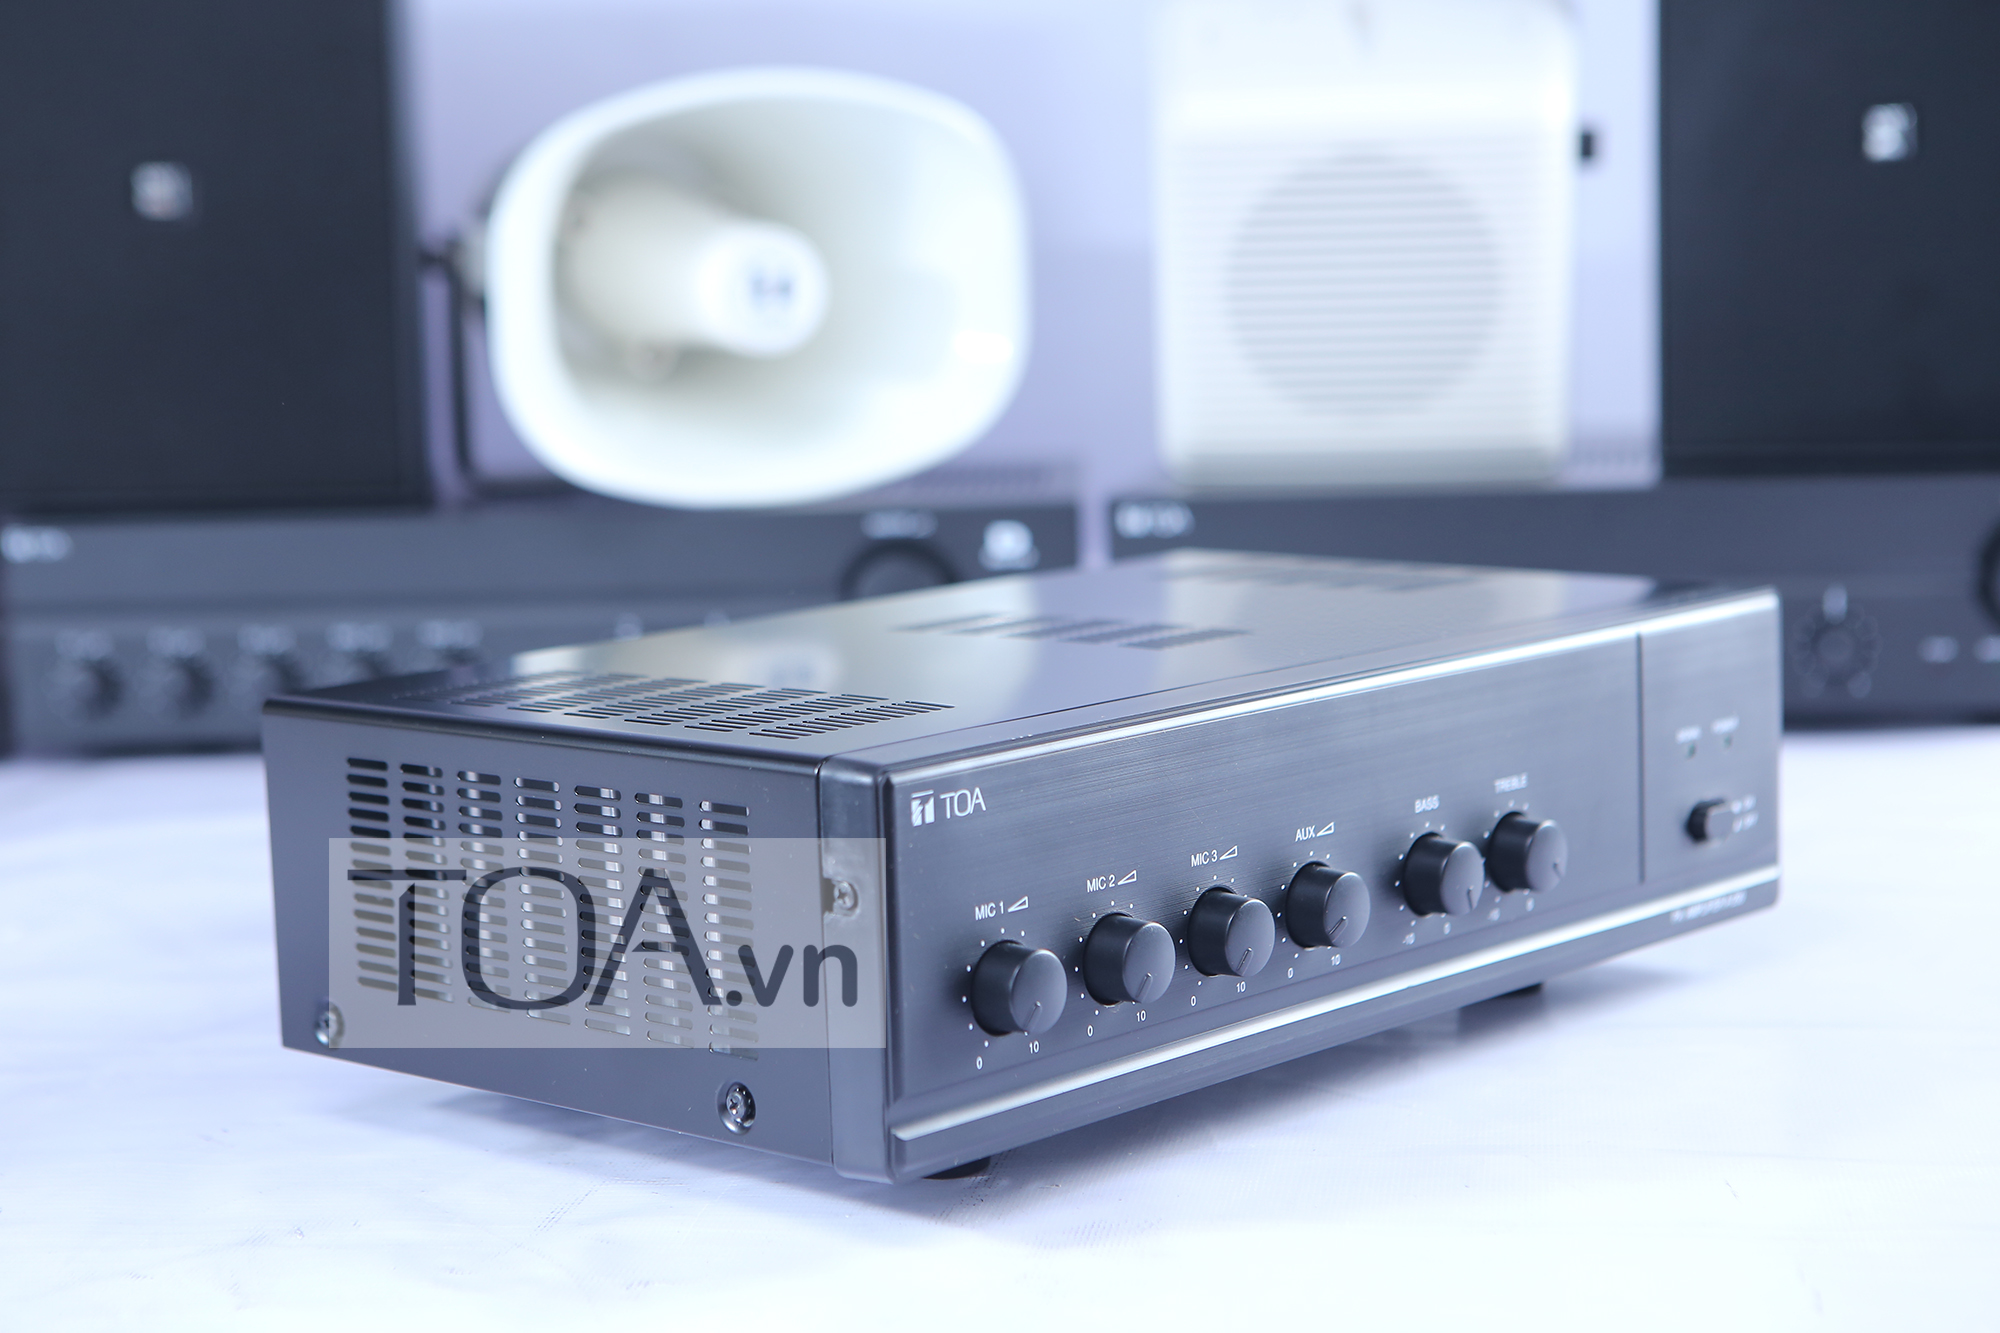 Tăng âm truyền thanh liền Mixer TOA A-230 HV